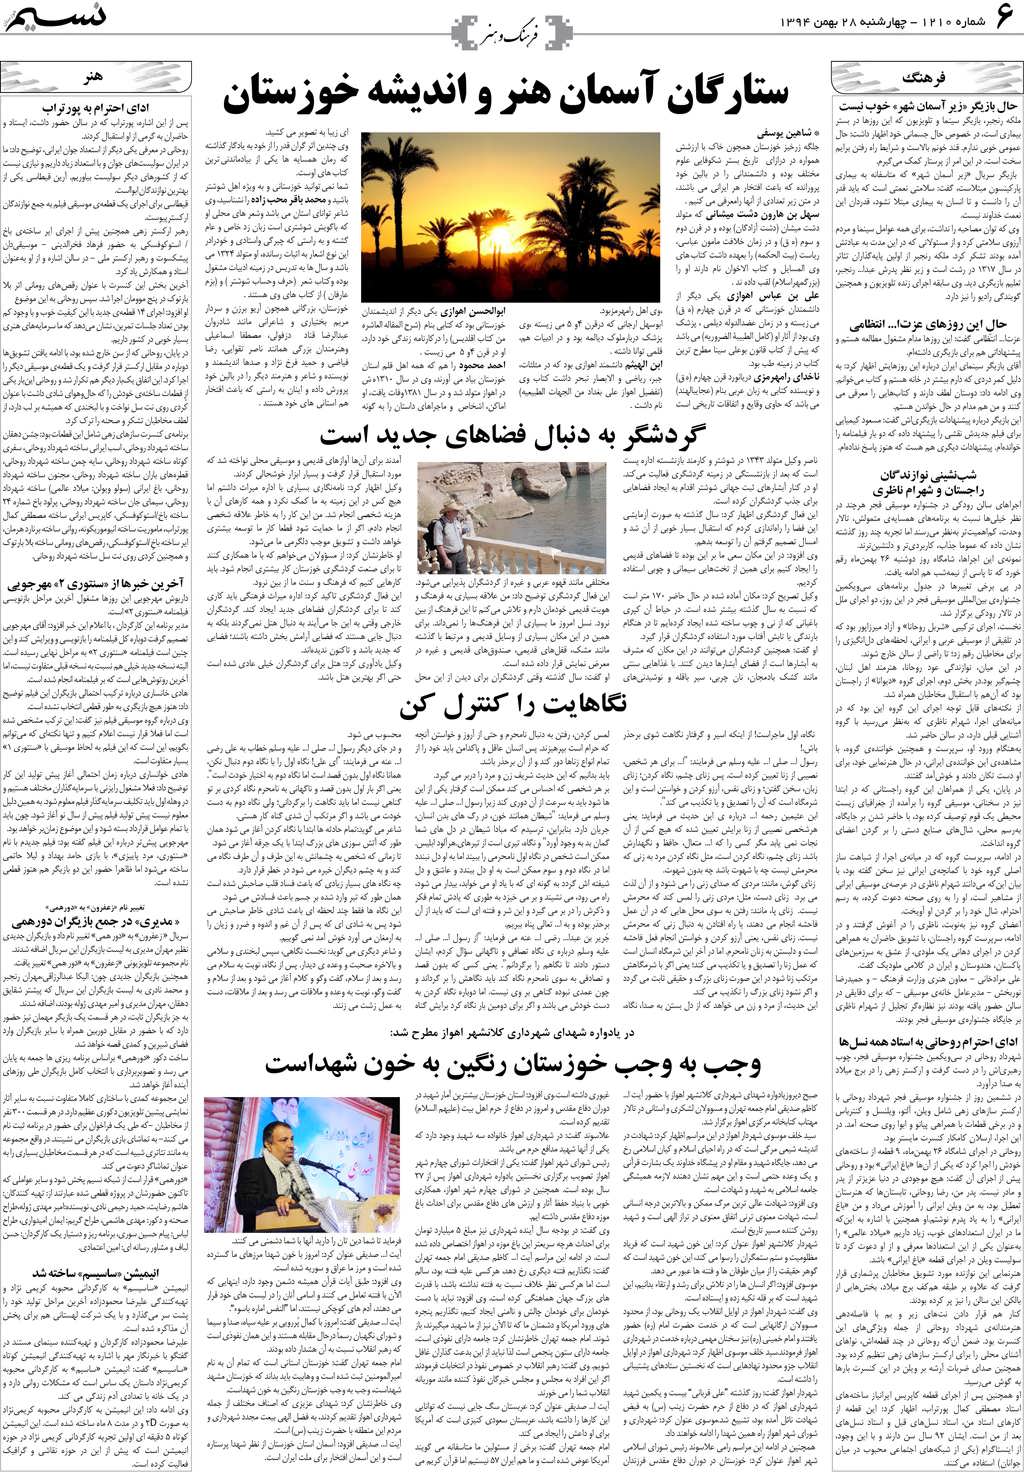 صفحه فرهنگ و هنر روزنامه نسیم شماره 1210